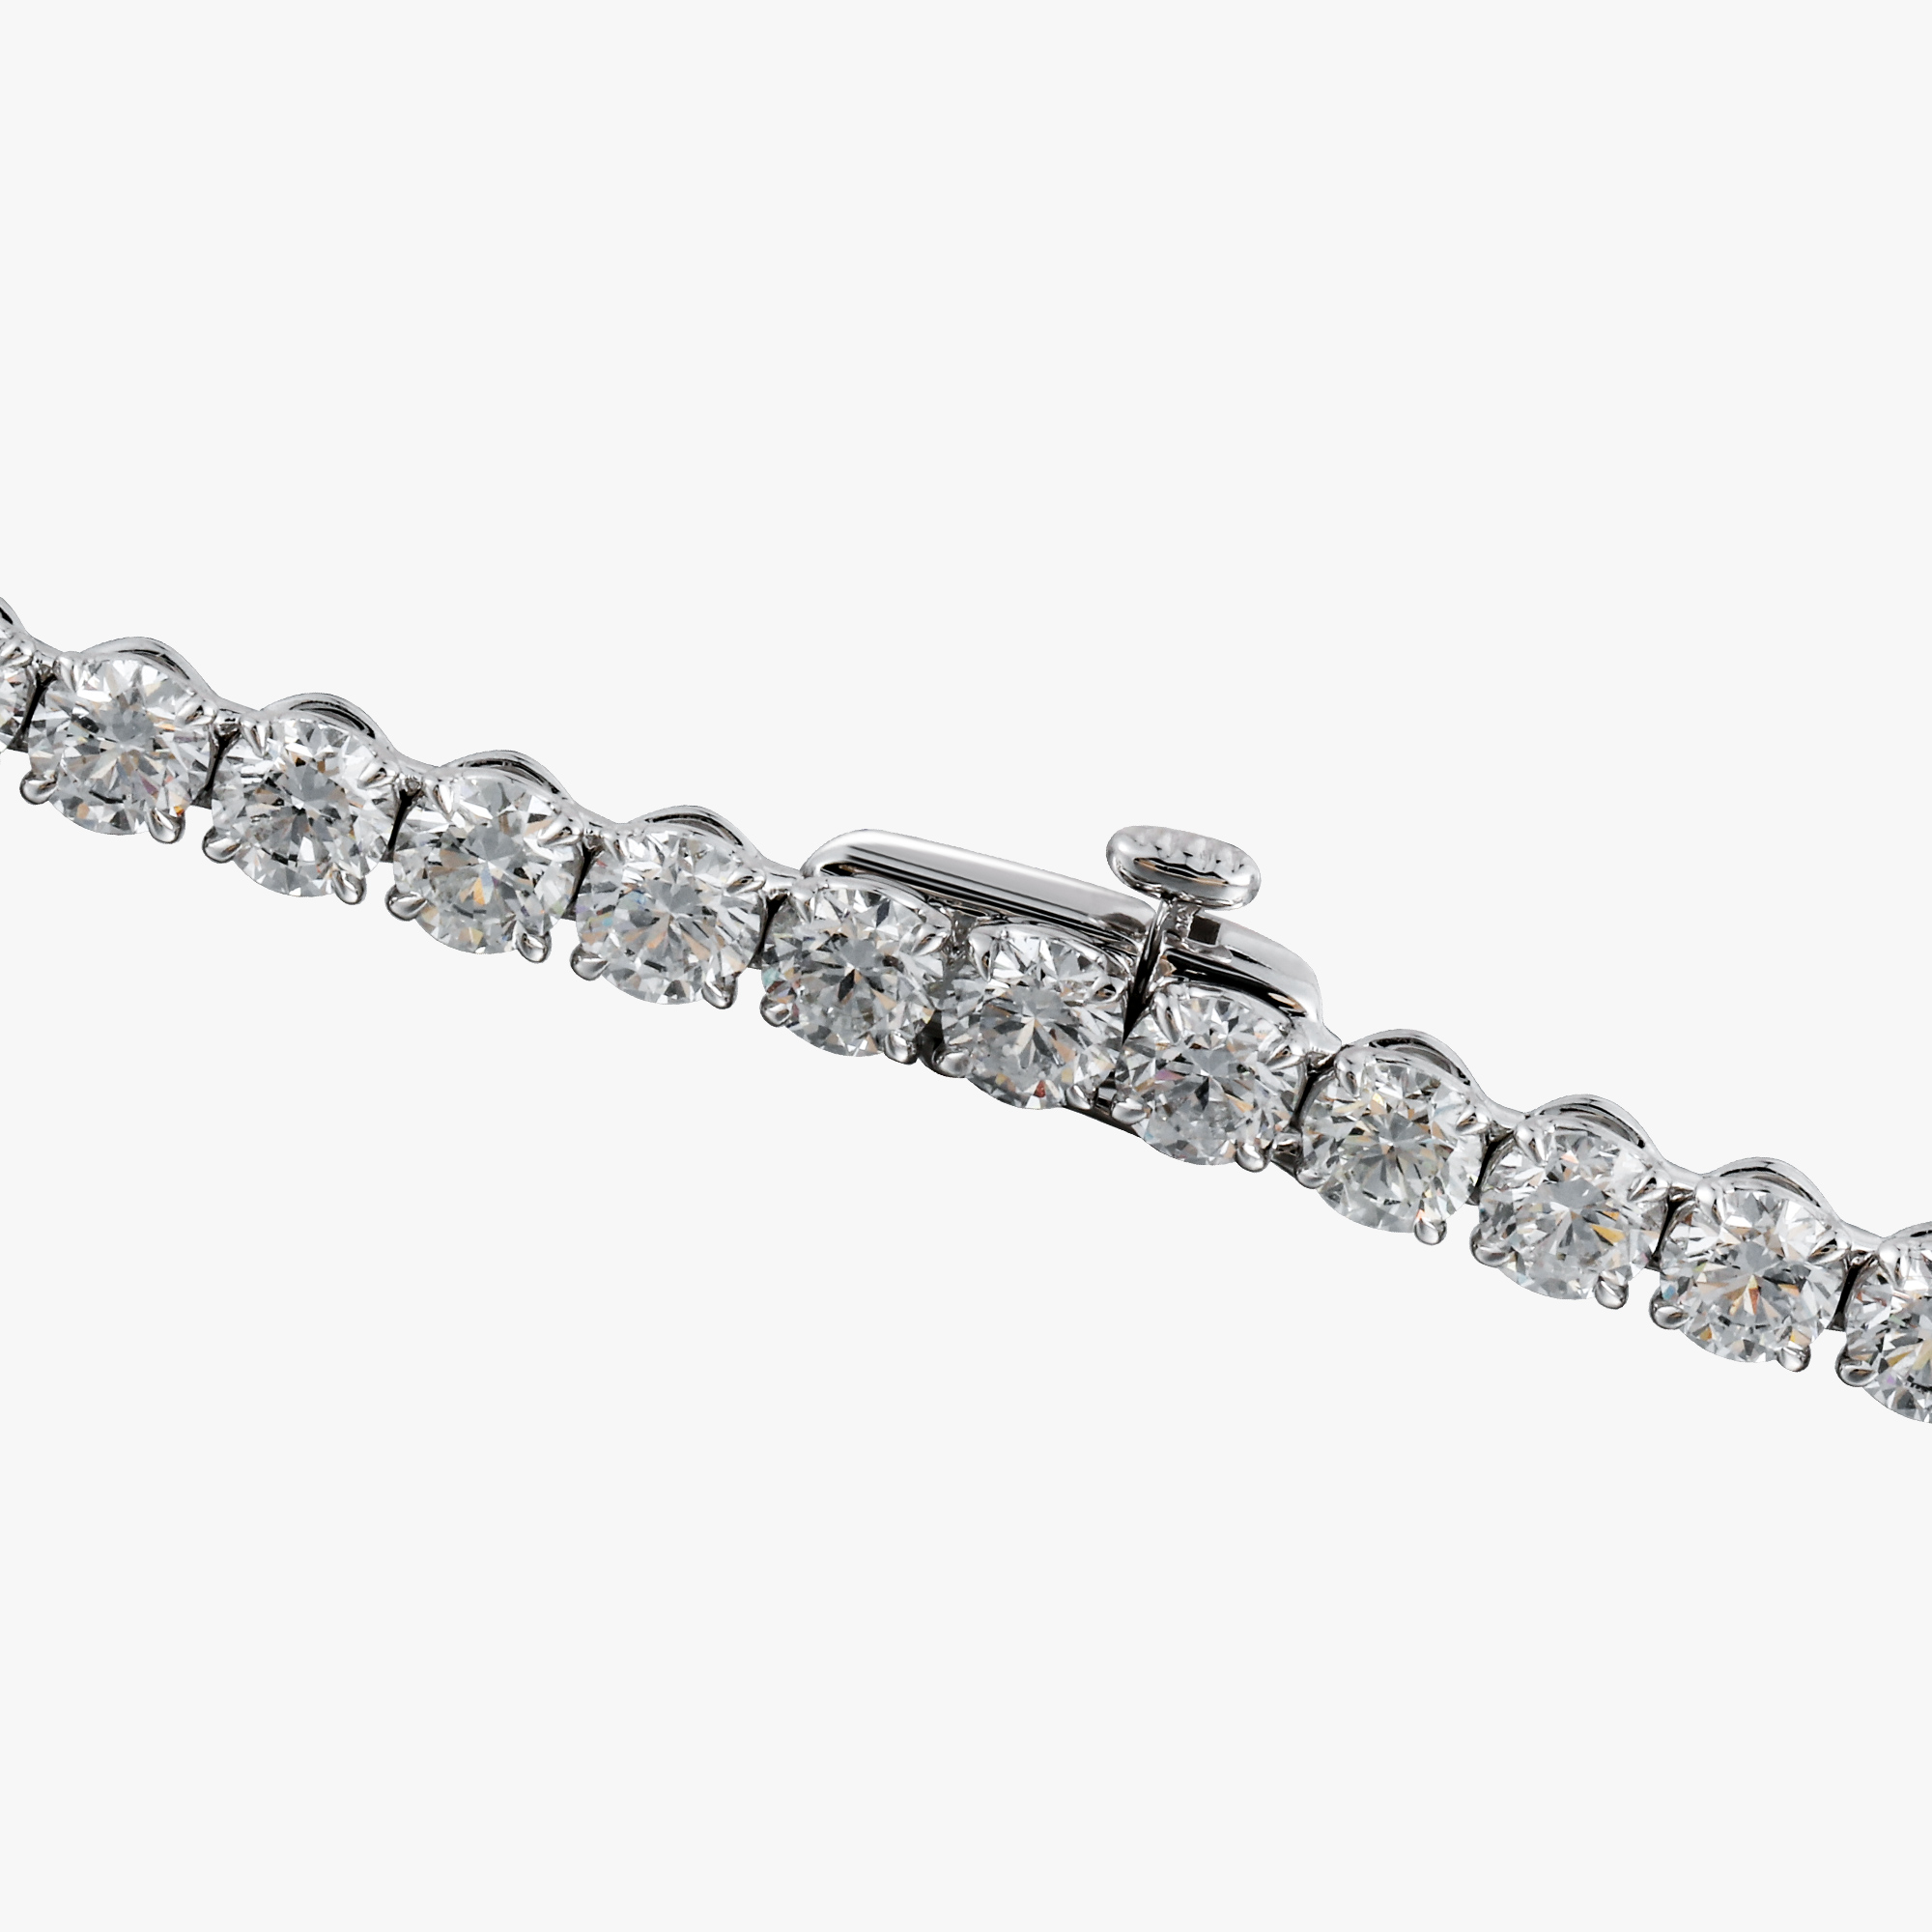 ACCA 18KW Bracelet with Round Diamond